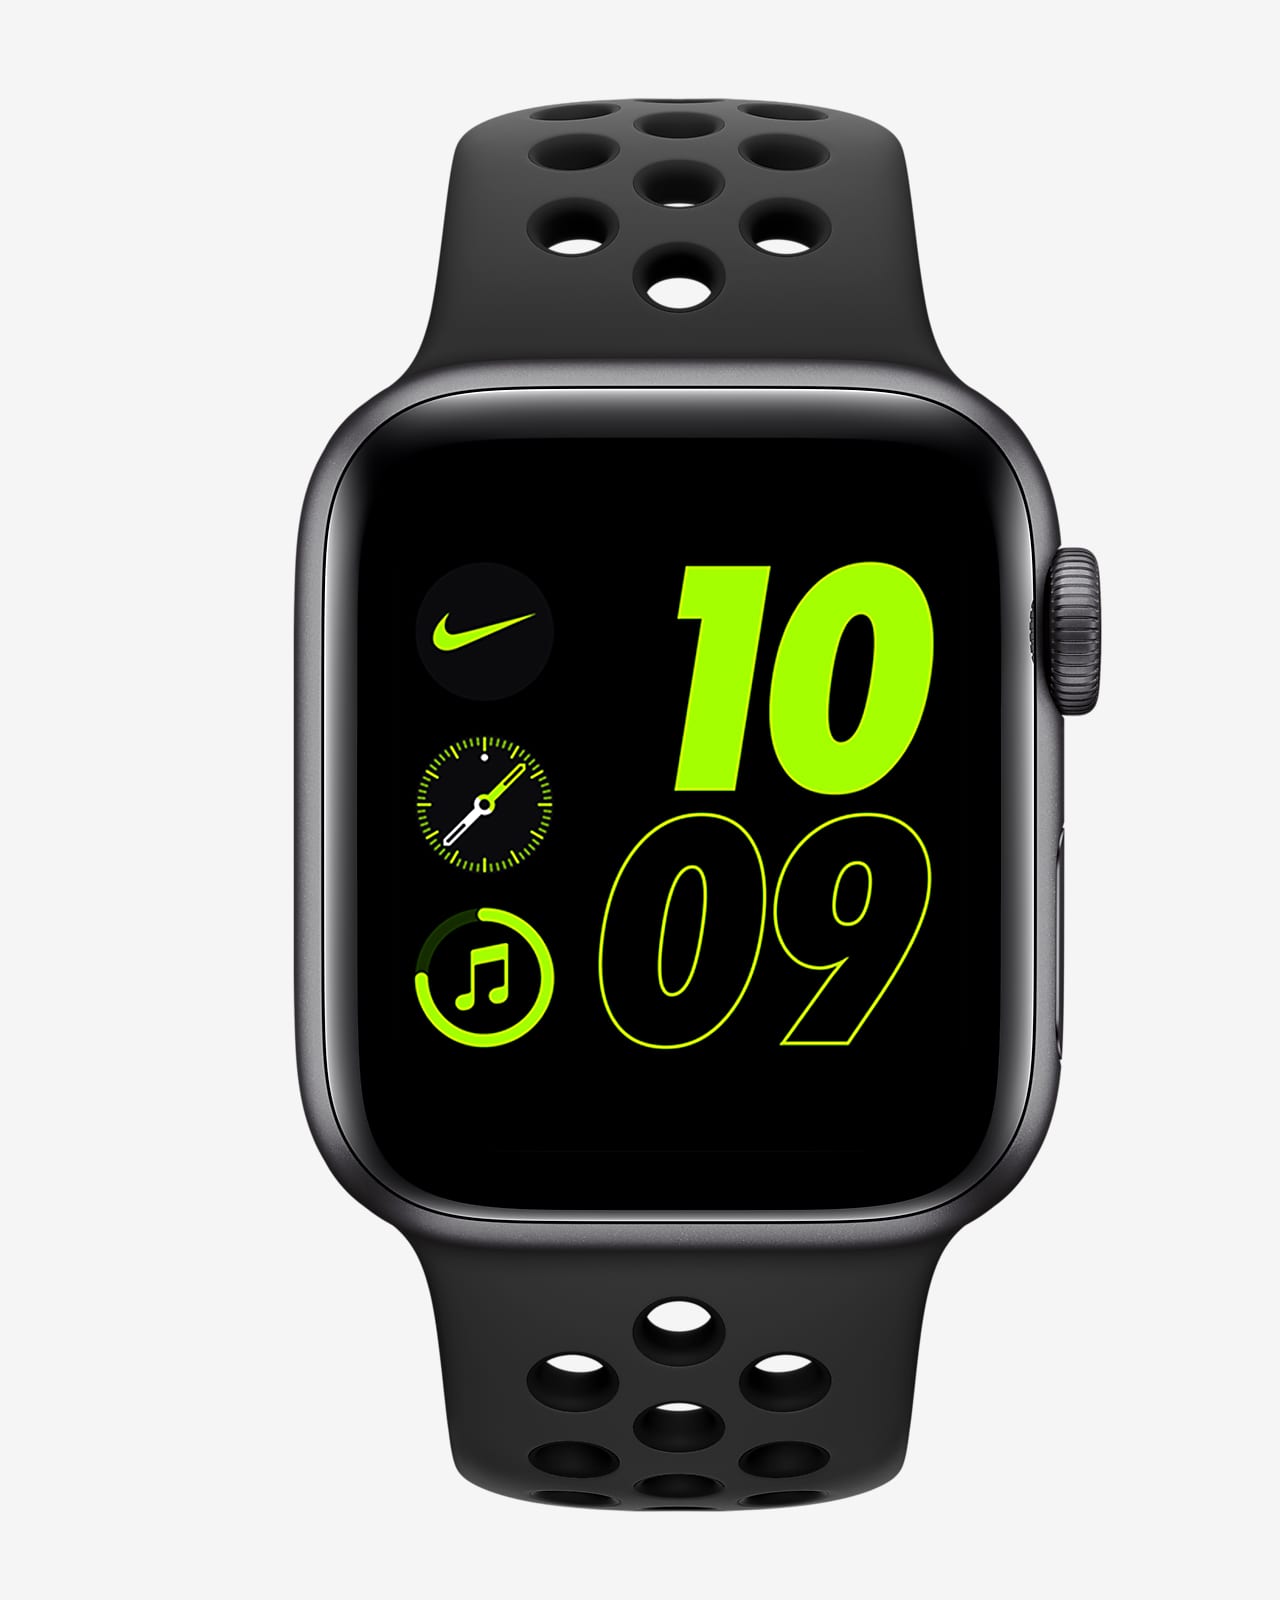 ポイントキャンペーン中 Apple Watch Nike SE GPSモデル44mm MKQ83J/A 